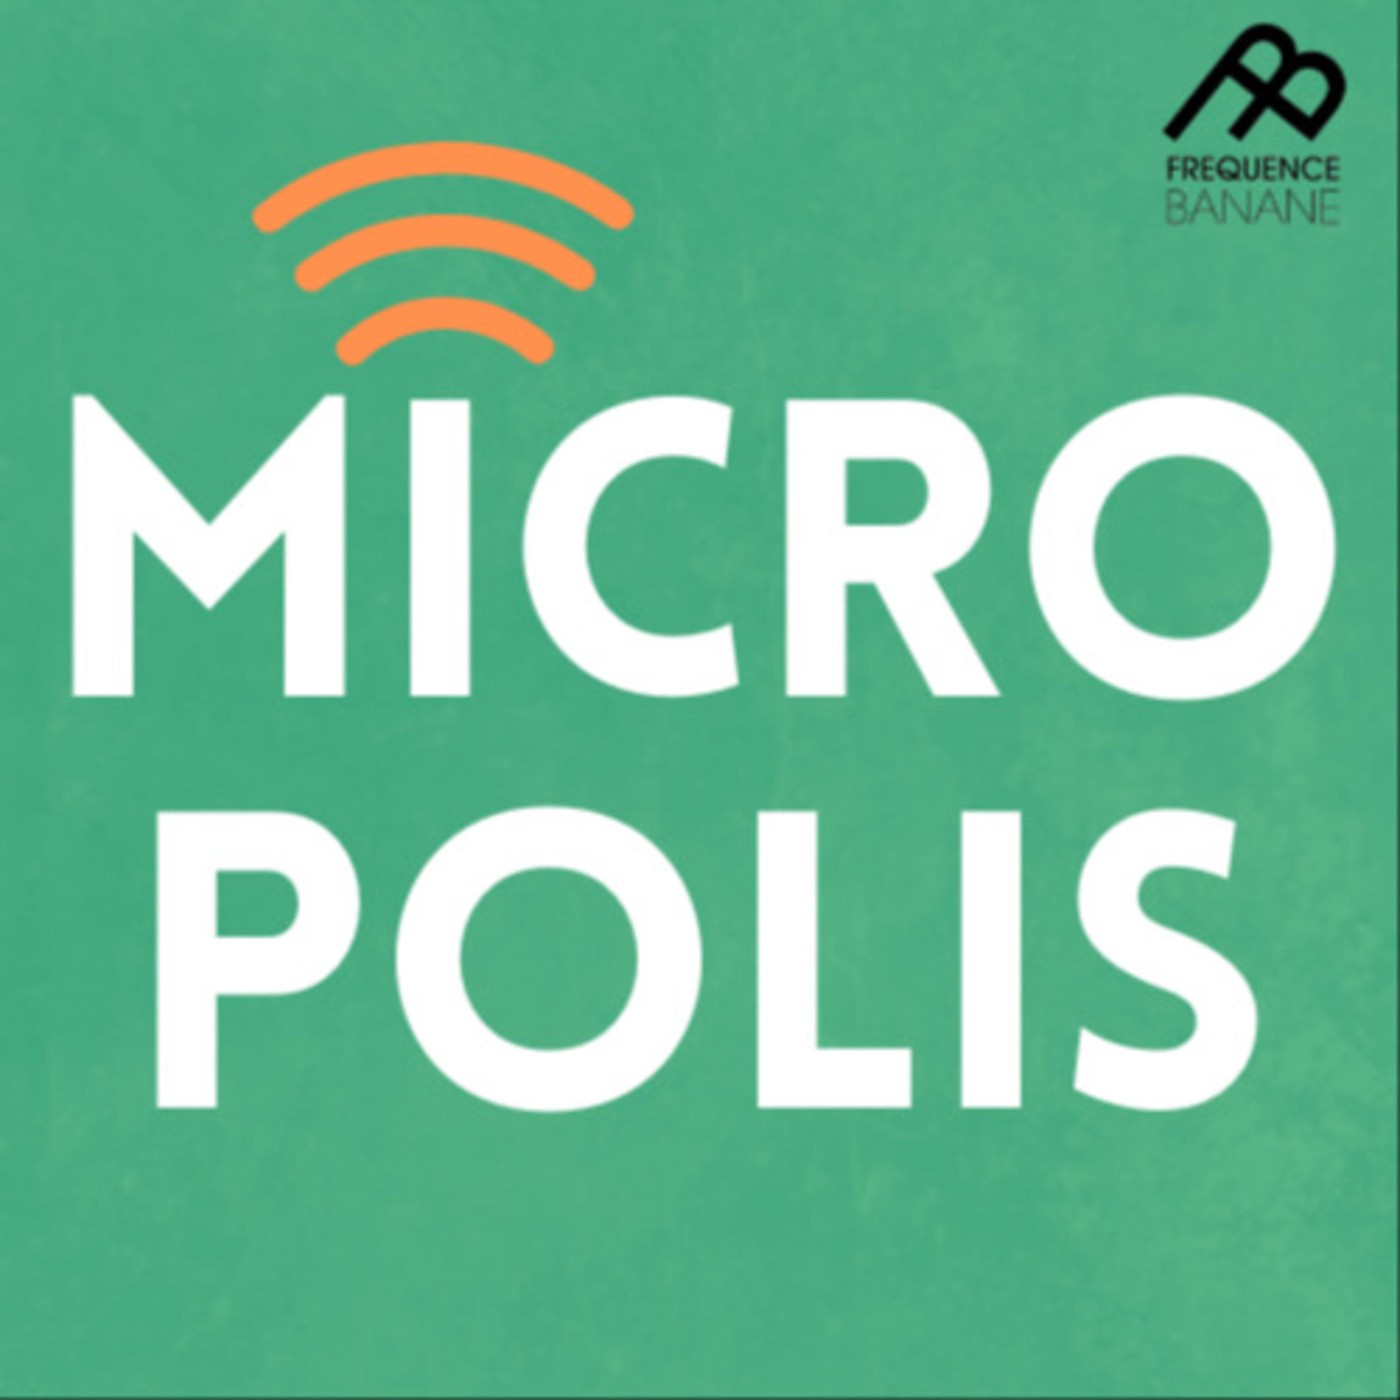 Micropolis du 03/03/20 - Tas Larsen - Les choix